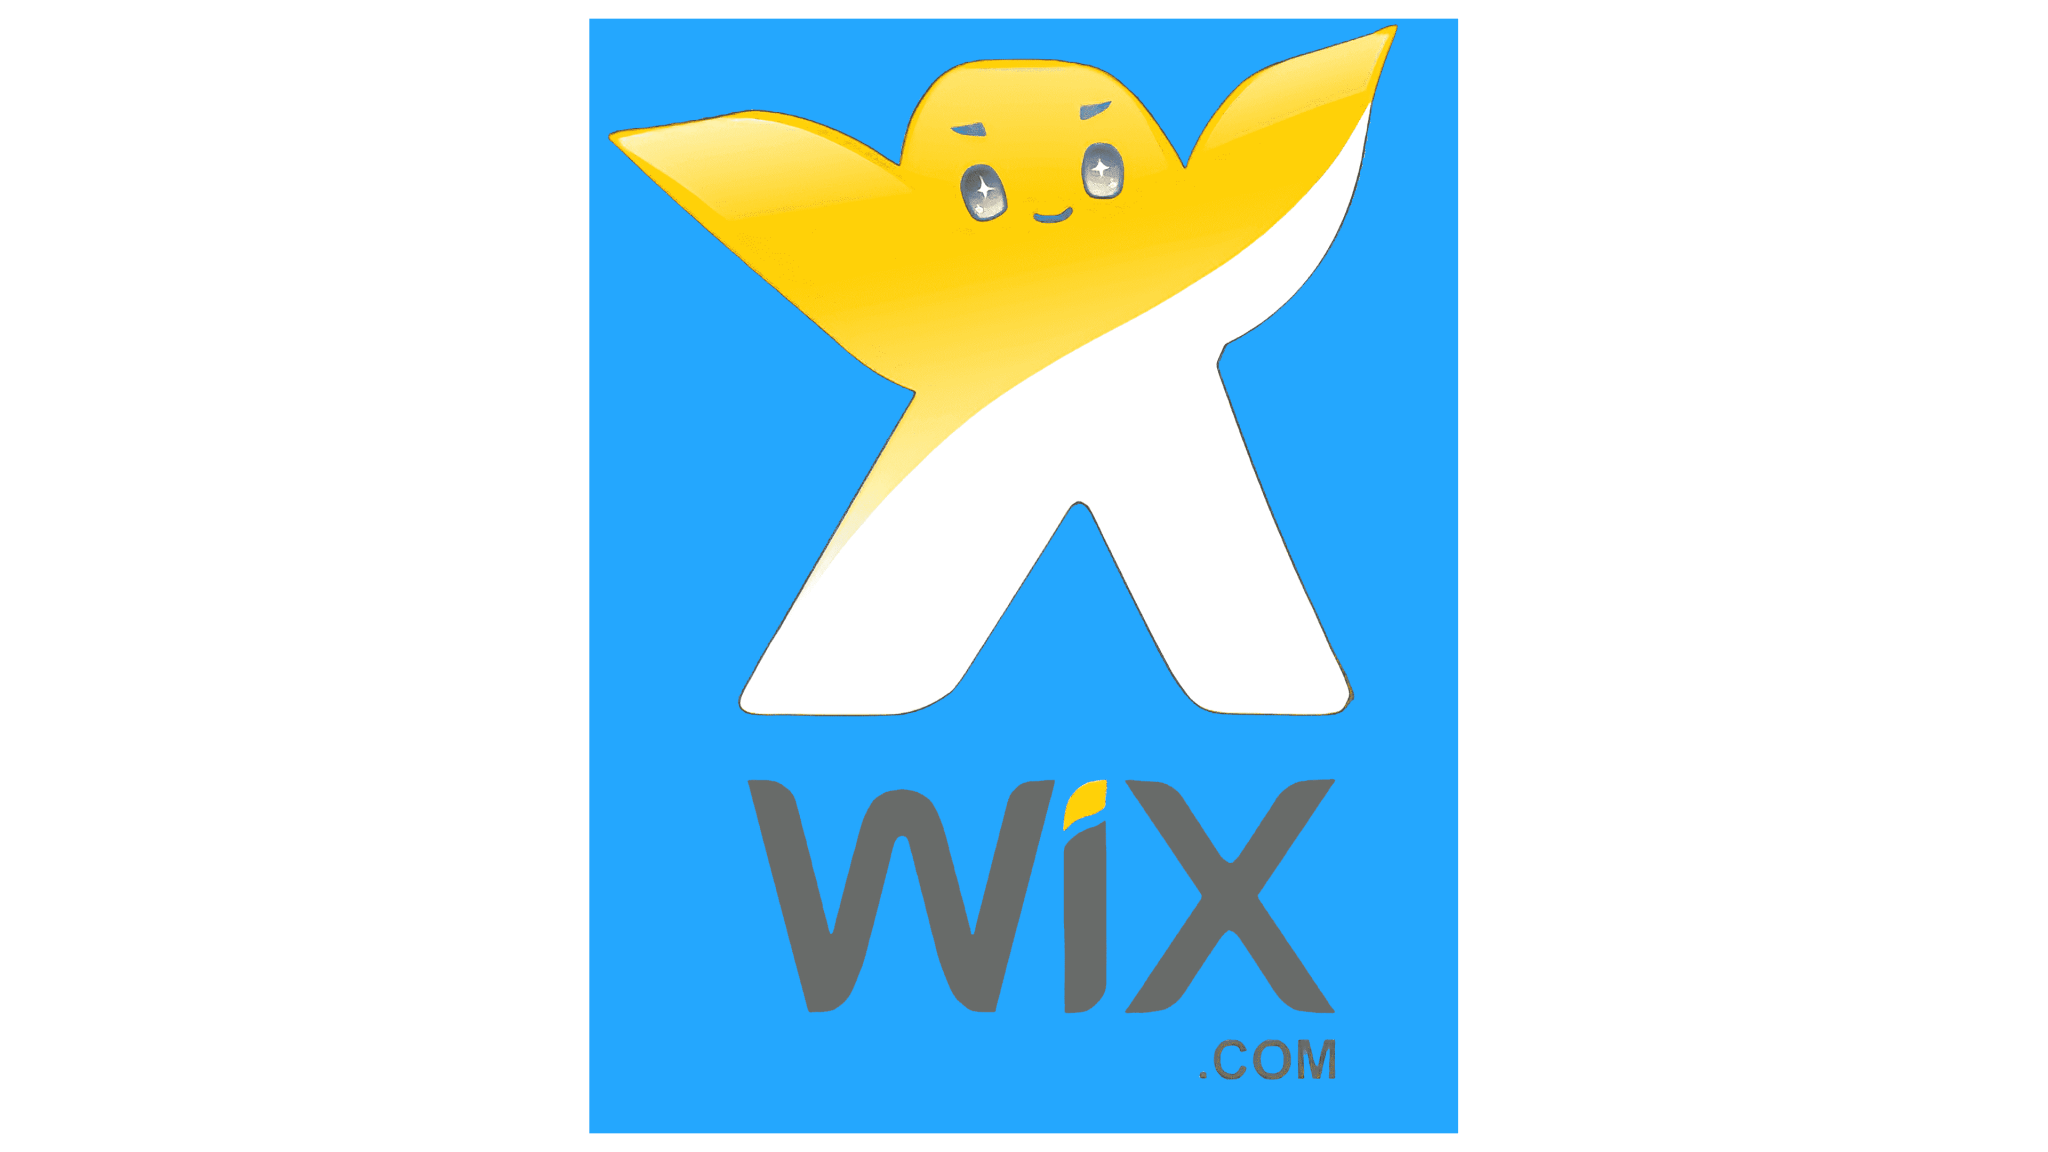 wix download free